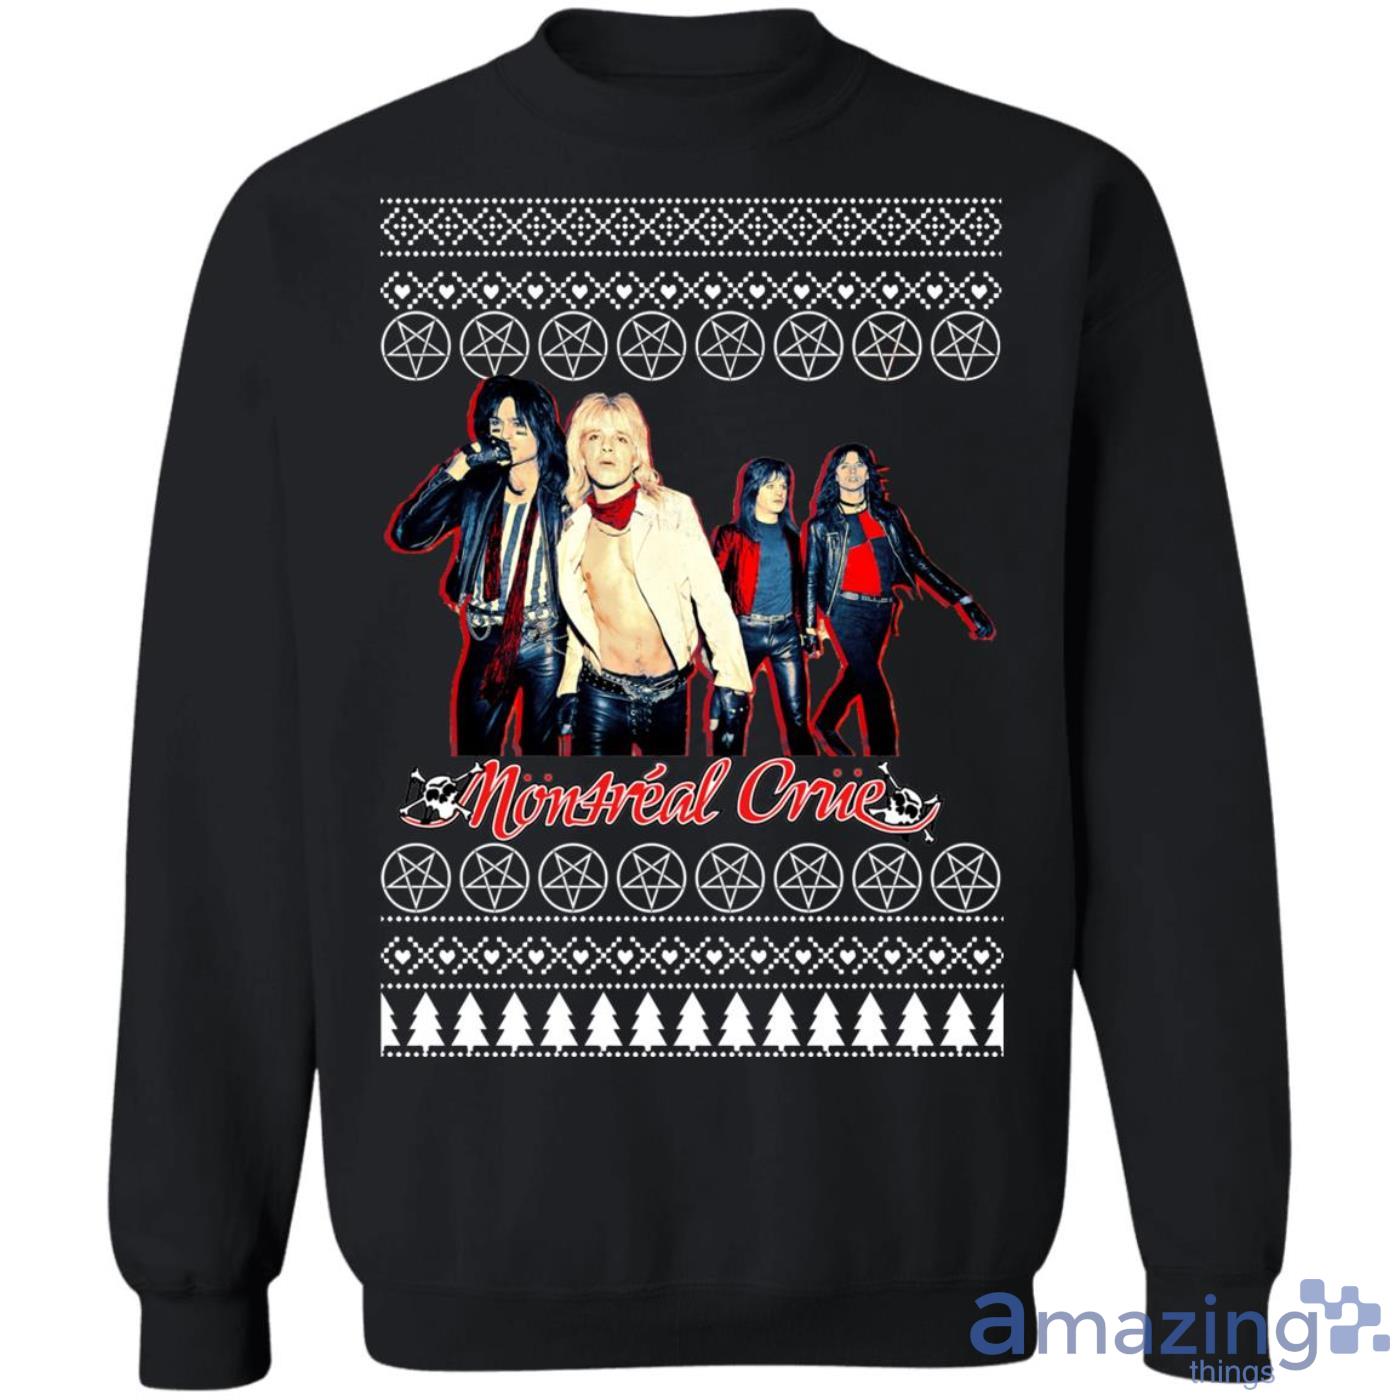 Motley Crue Christmas Sweatshirt Product Photo 1